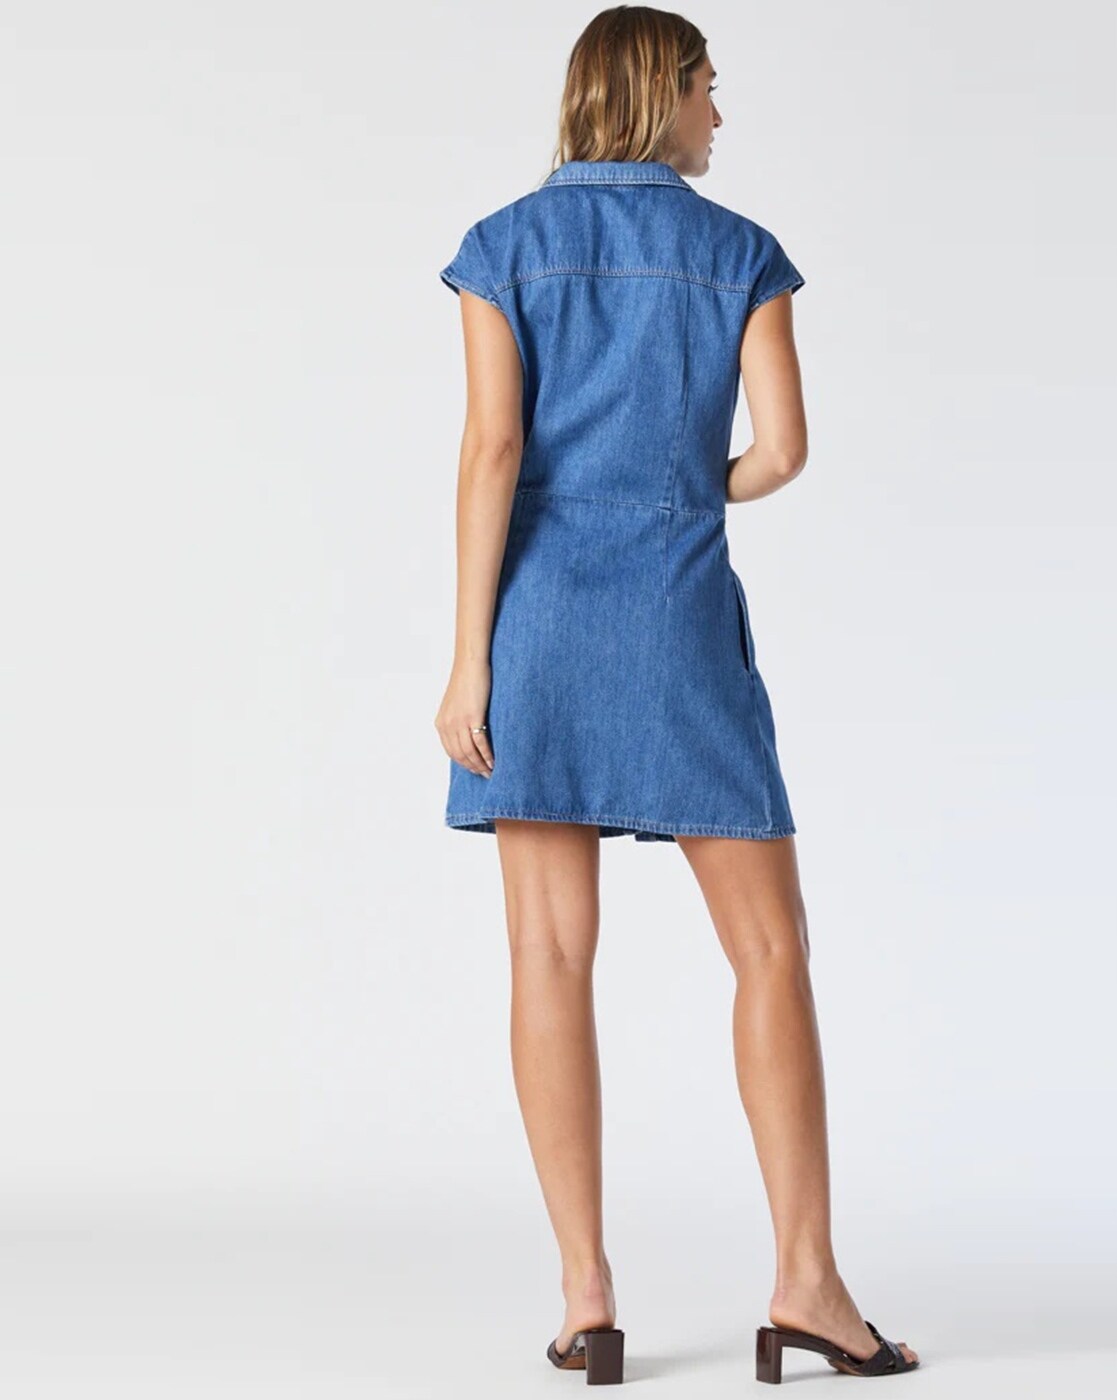 Quinoa Women's Blue Cotton Denim Shirt Dress